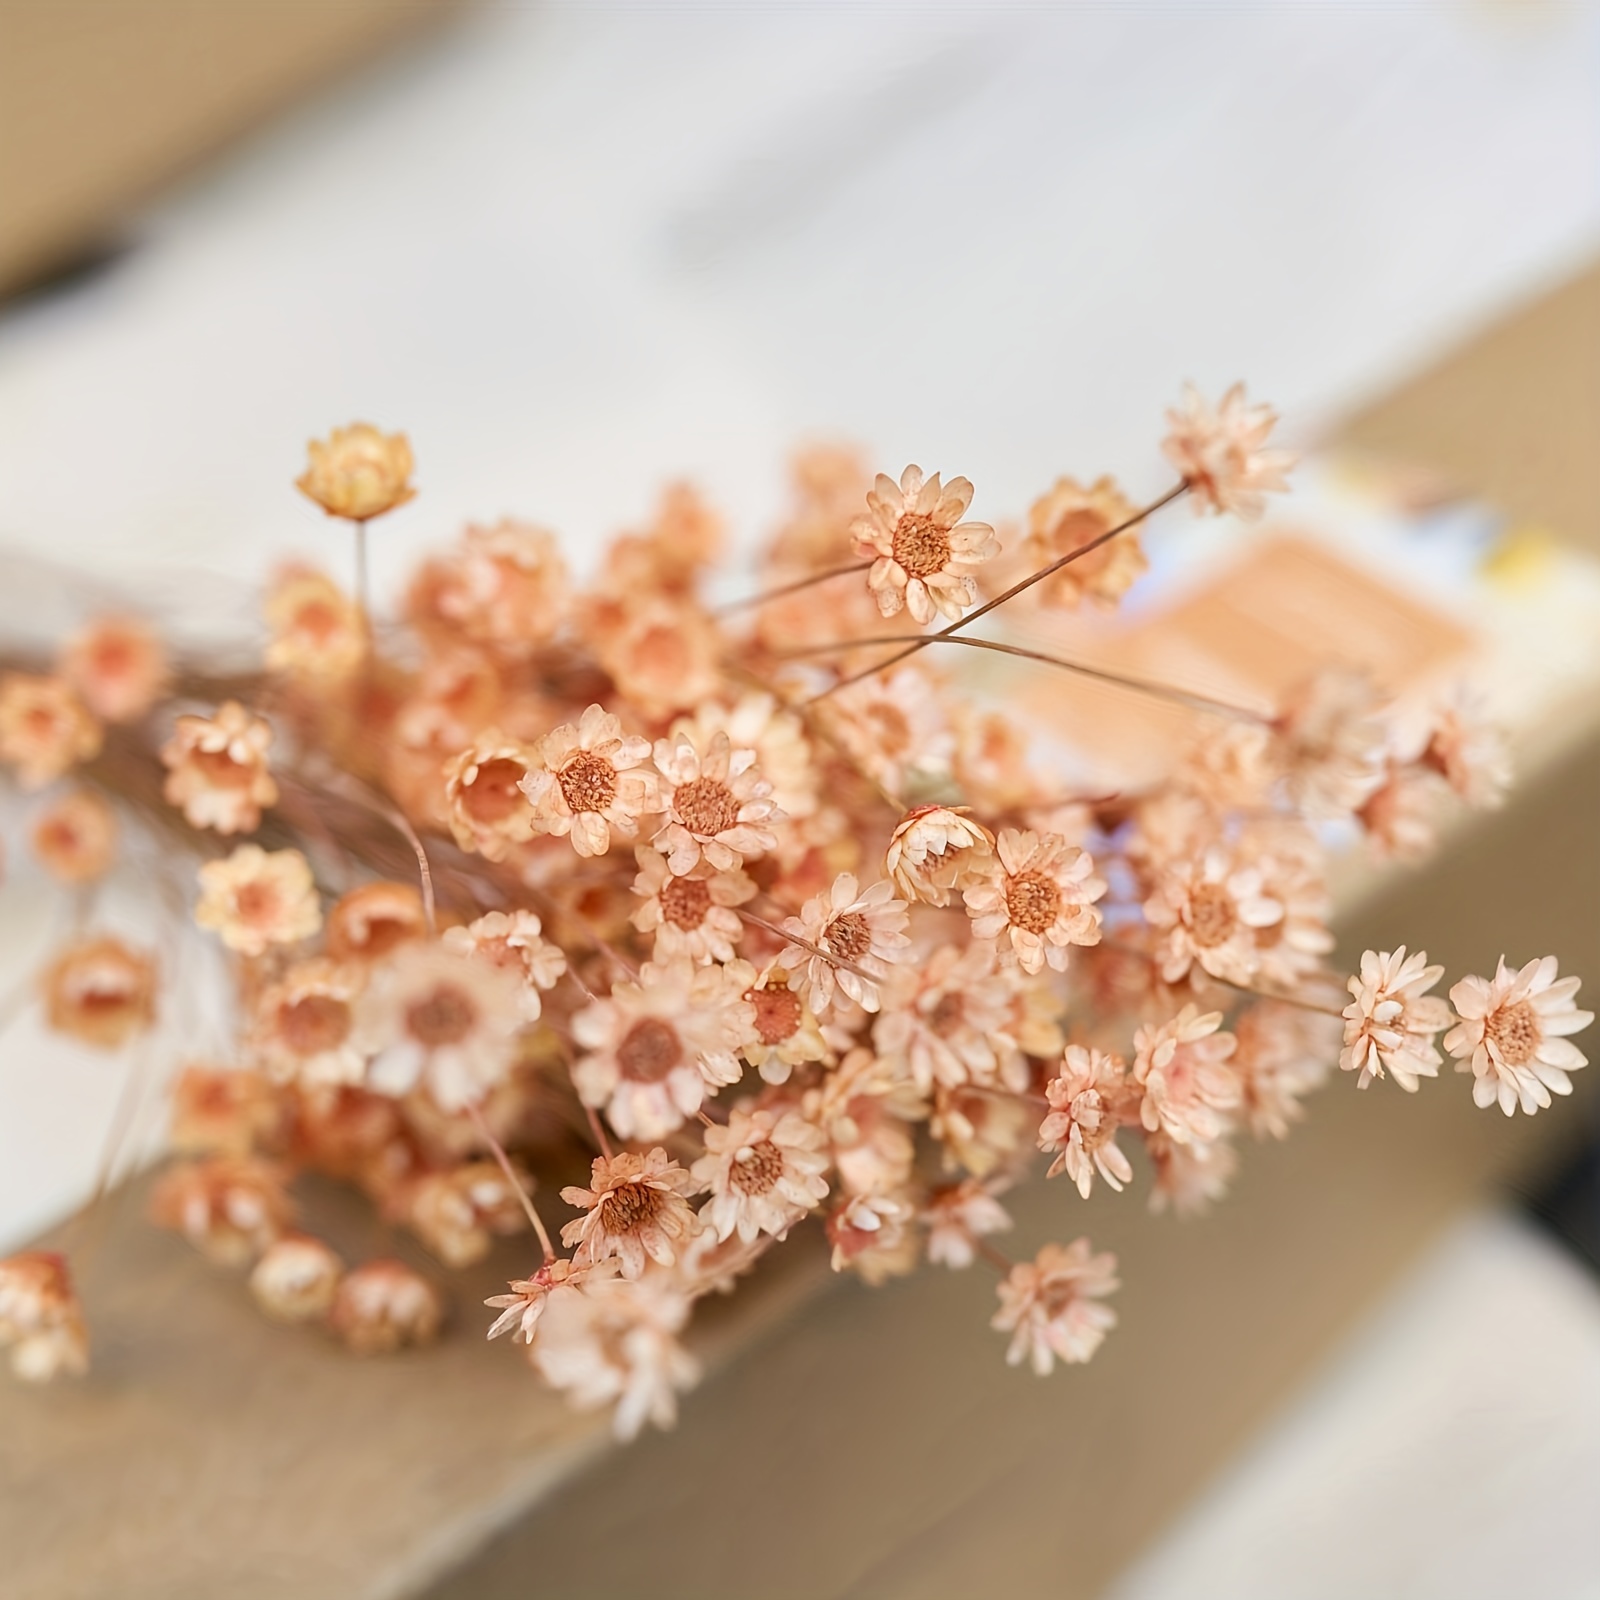 Mélange fleurs séchées alimentaires, Mirontaine - LE TEMPS DES ENVIES